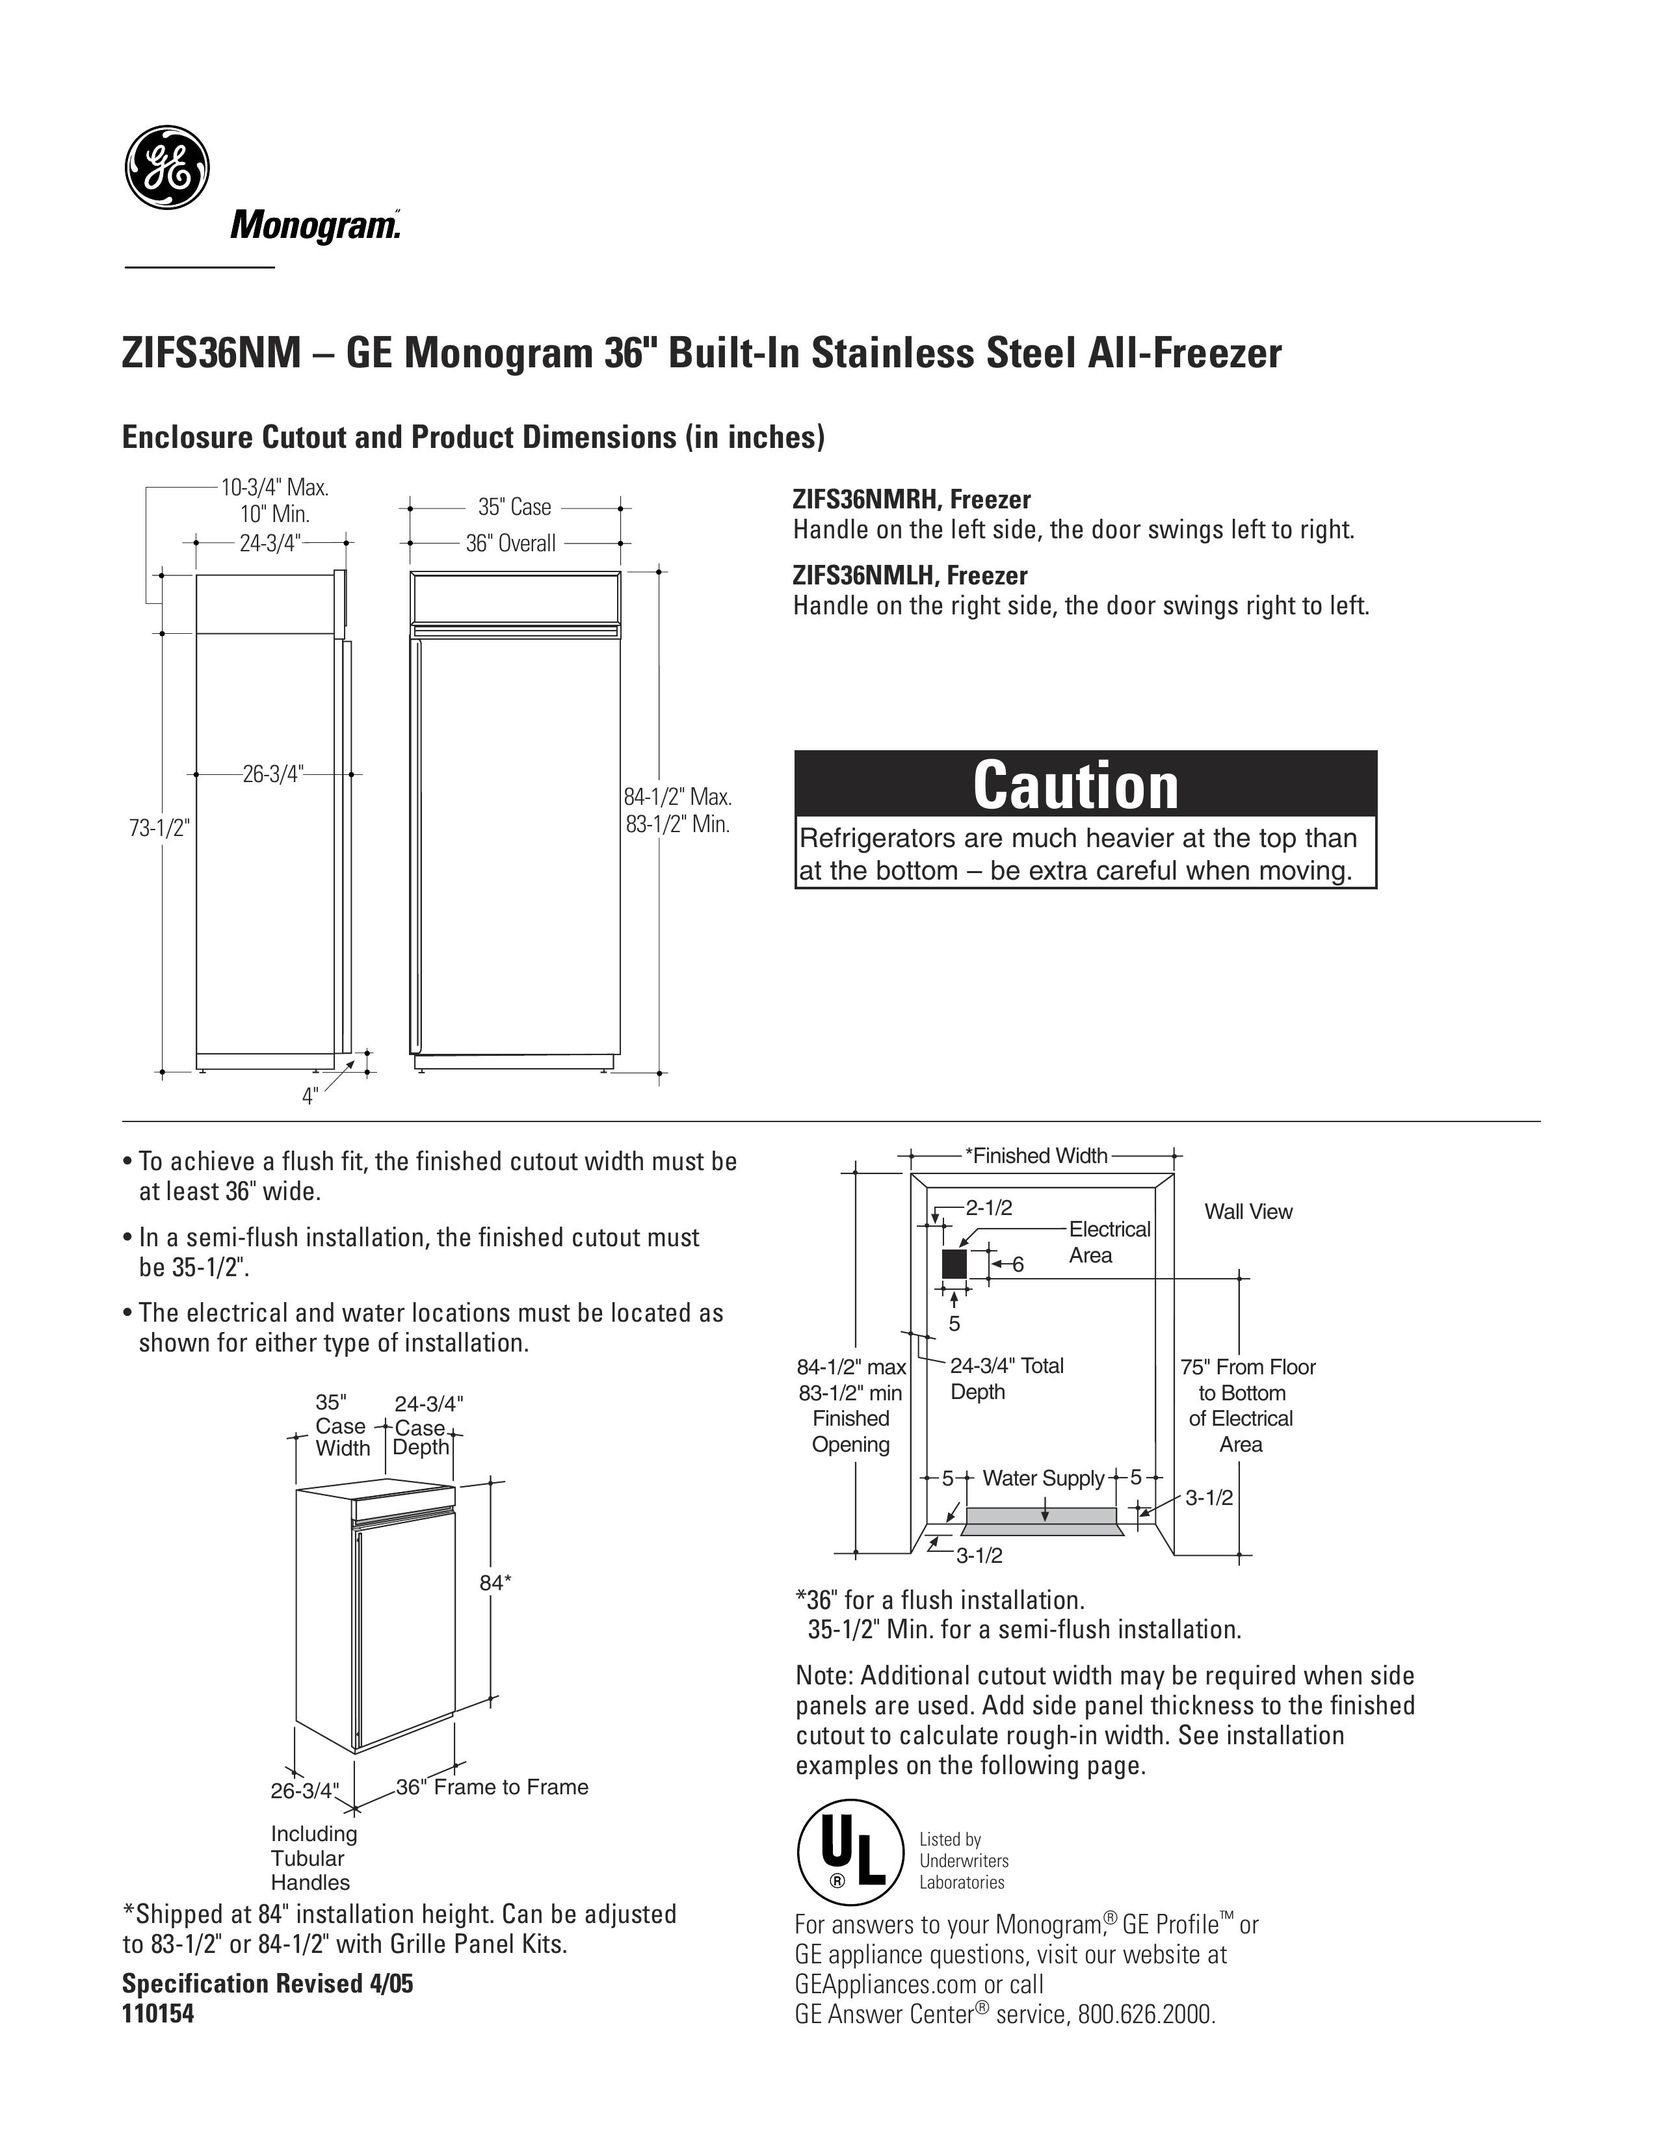 GE Monogram ZIFS36NM Freezer User Manual